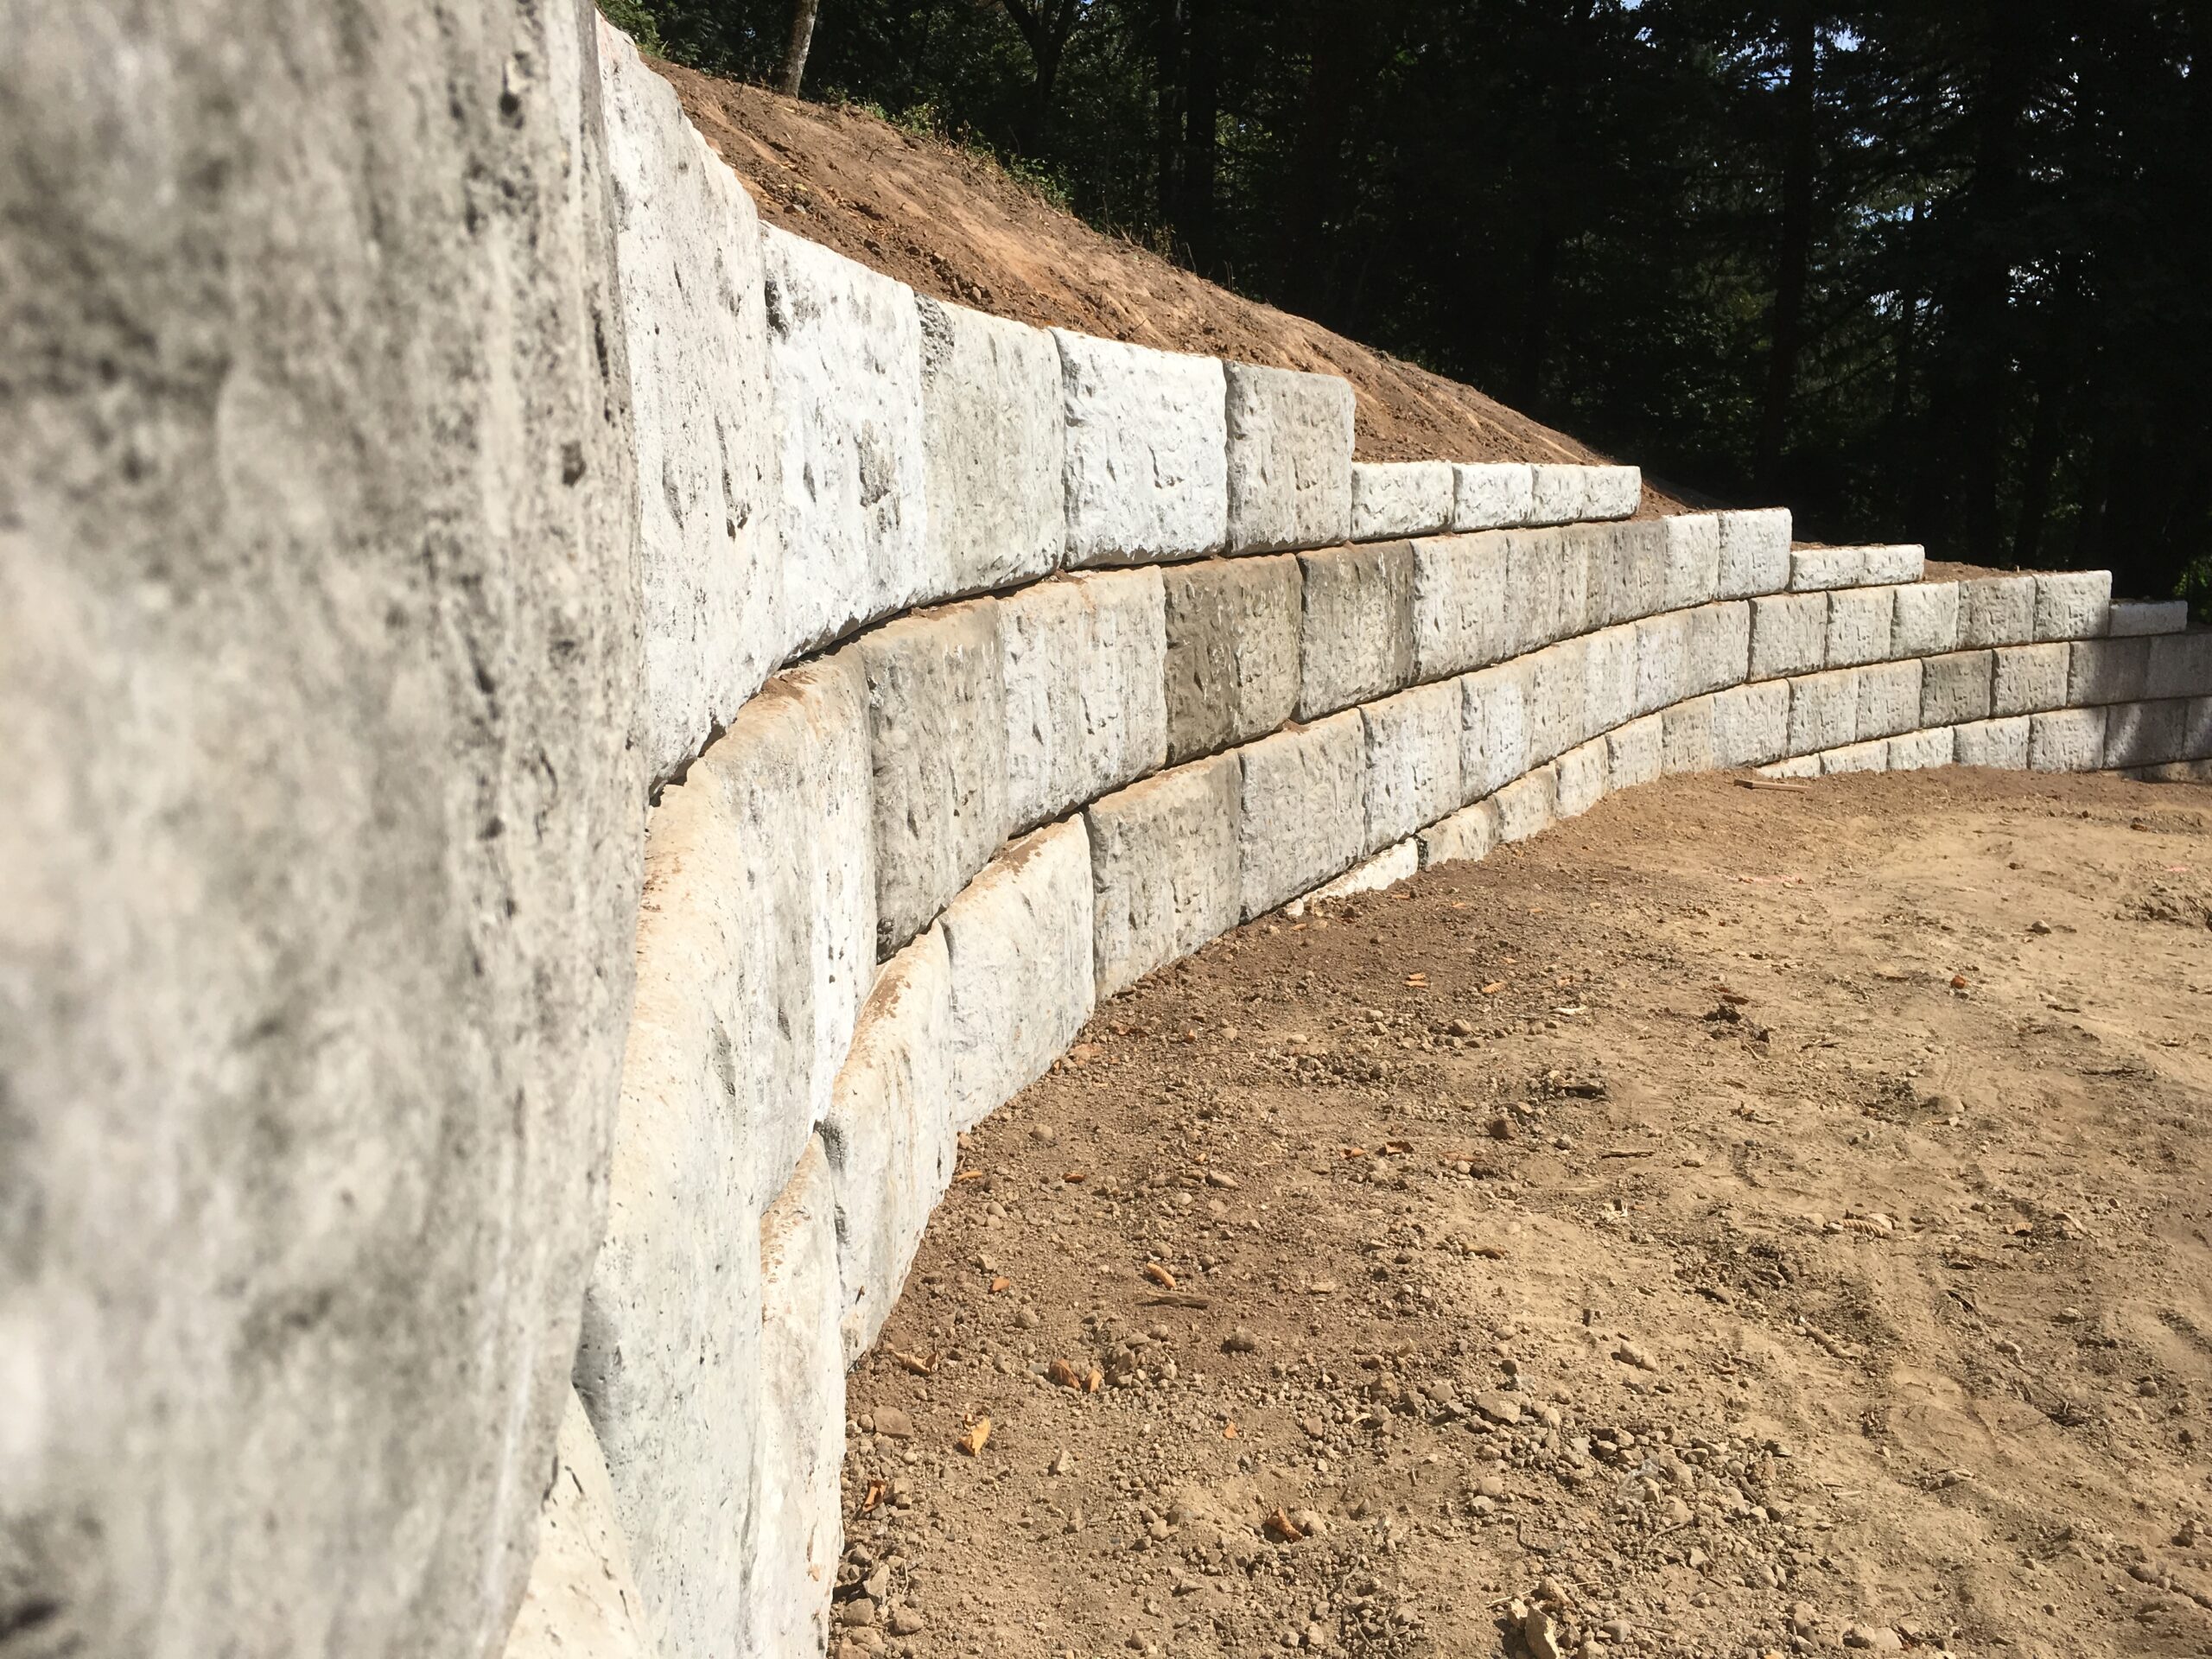 Prodan LLC is a retaining wall construction company